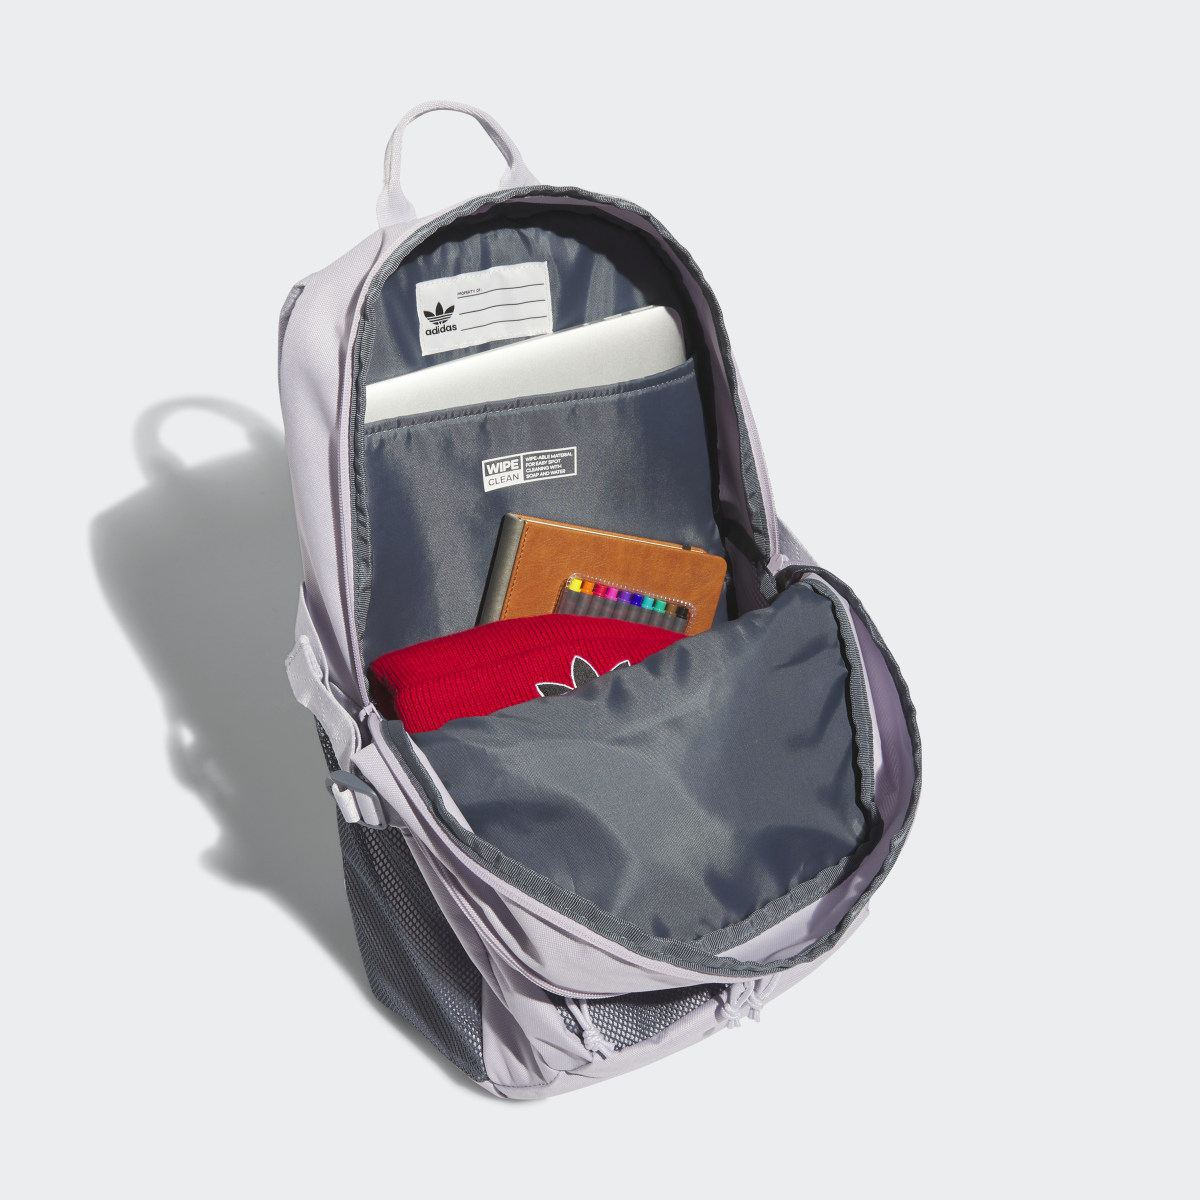 Adidas Energy Backpack. 5